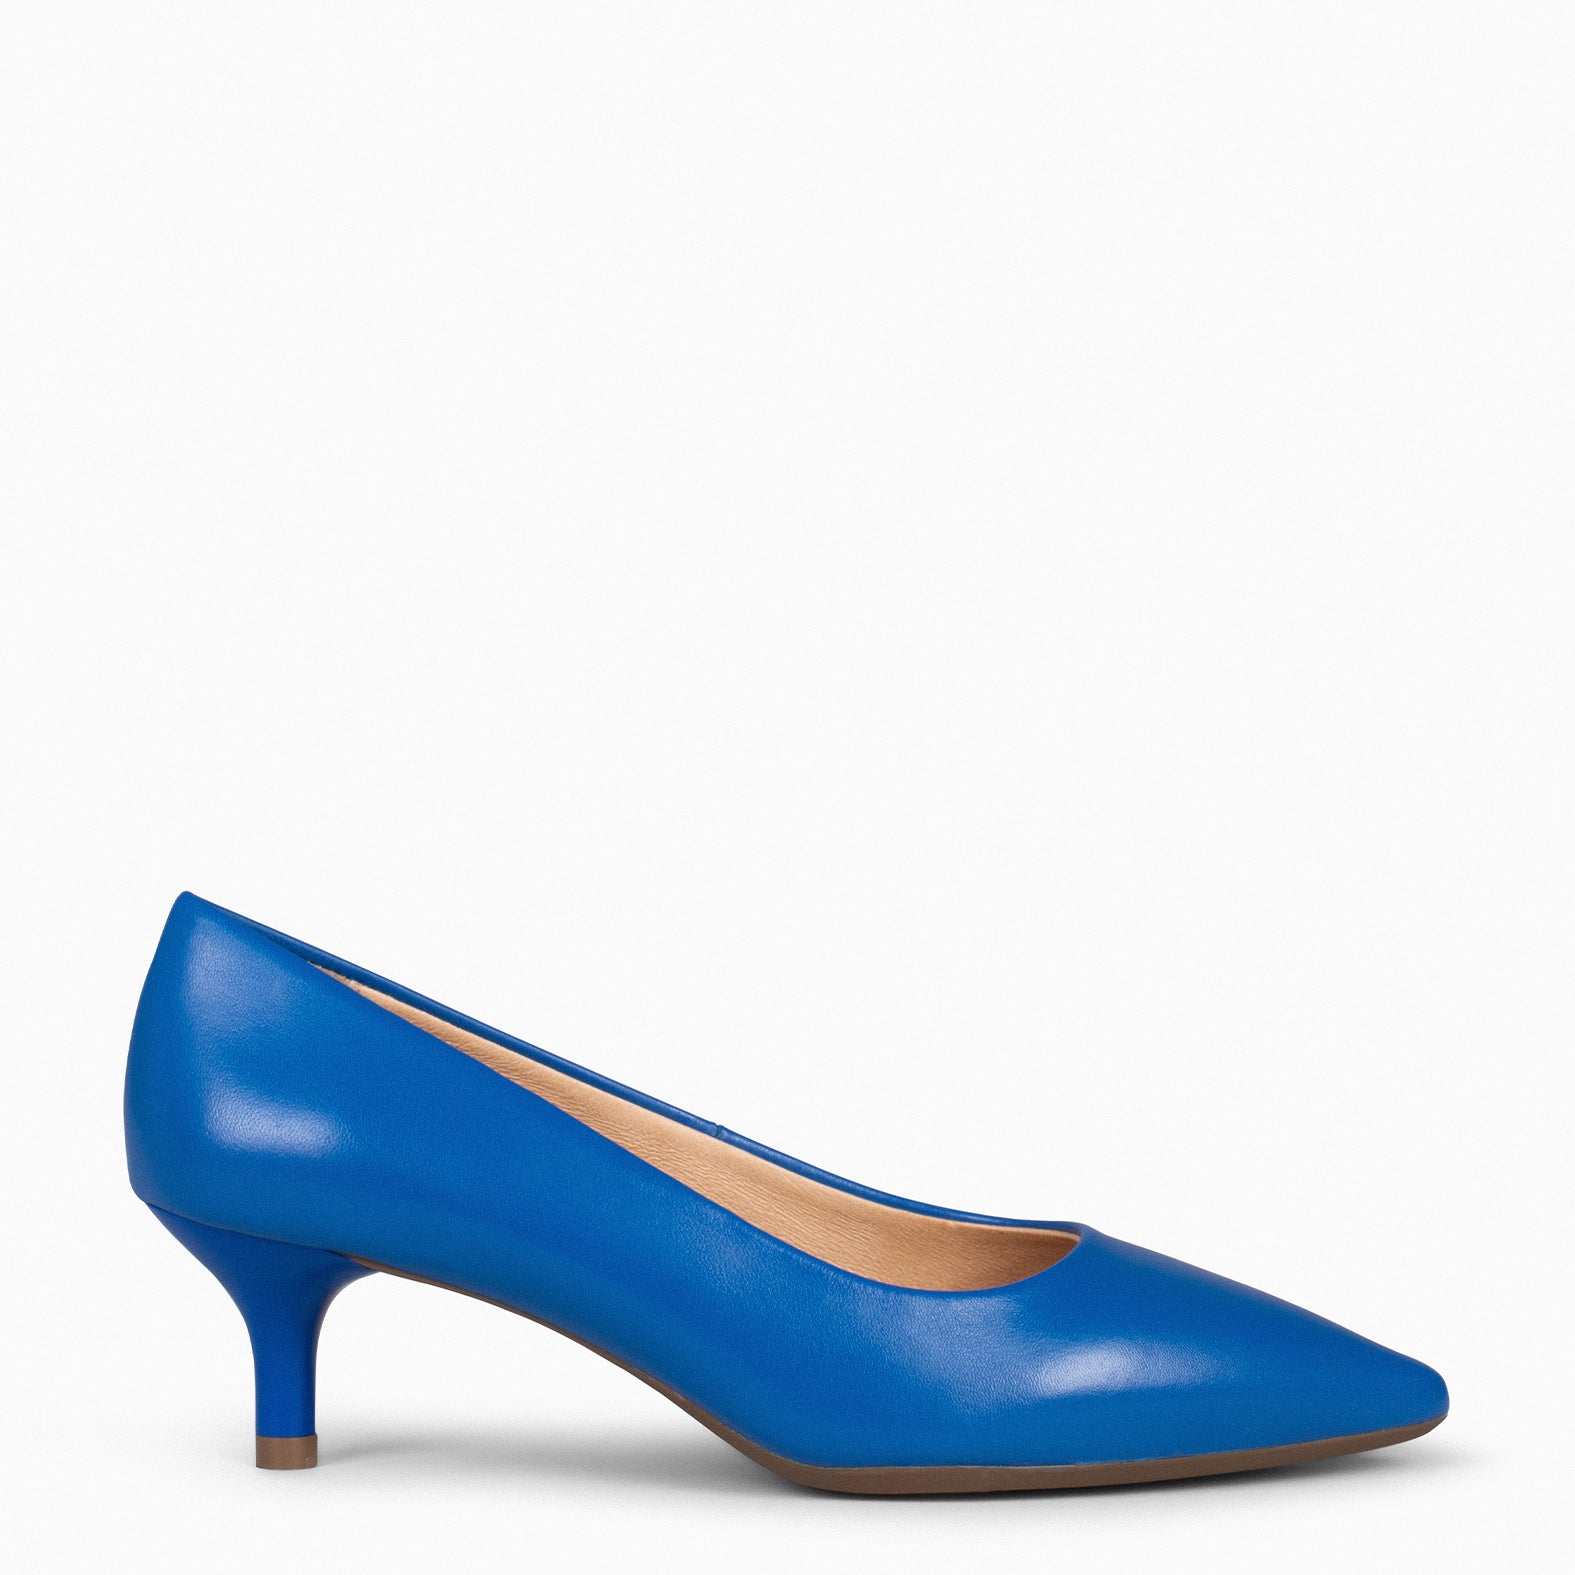 URBAN KITTEN – BLUE nappa leather kitten heels